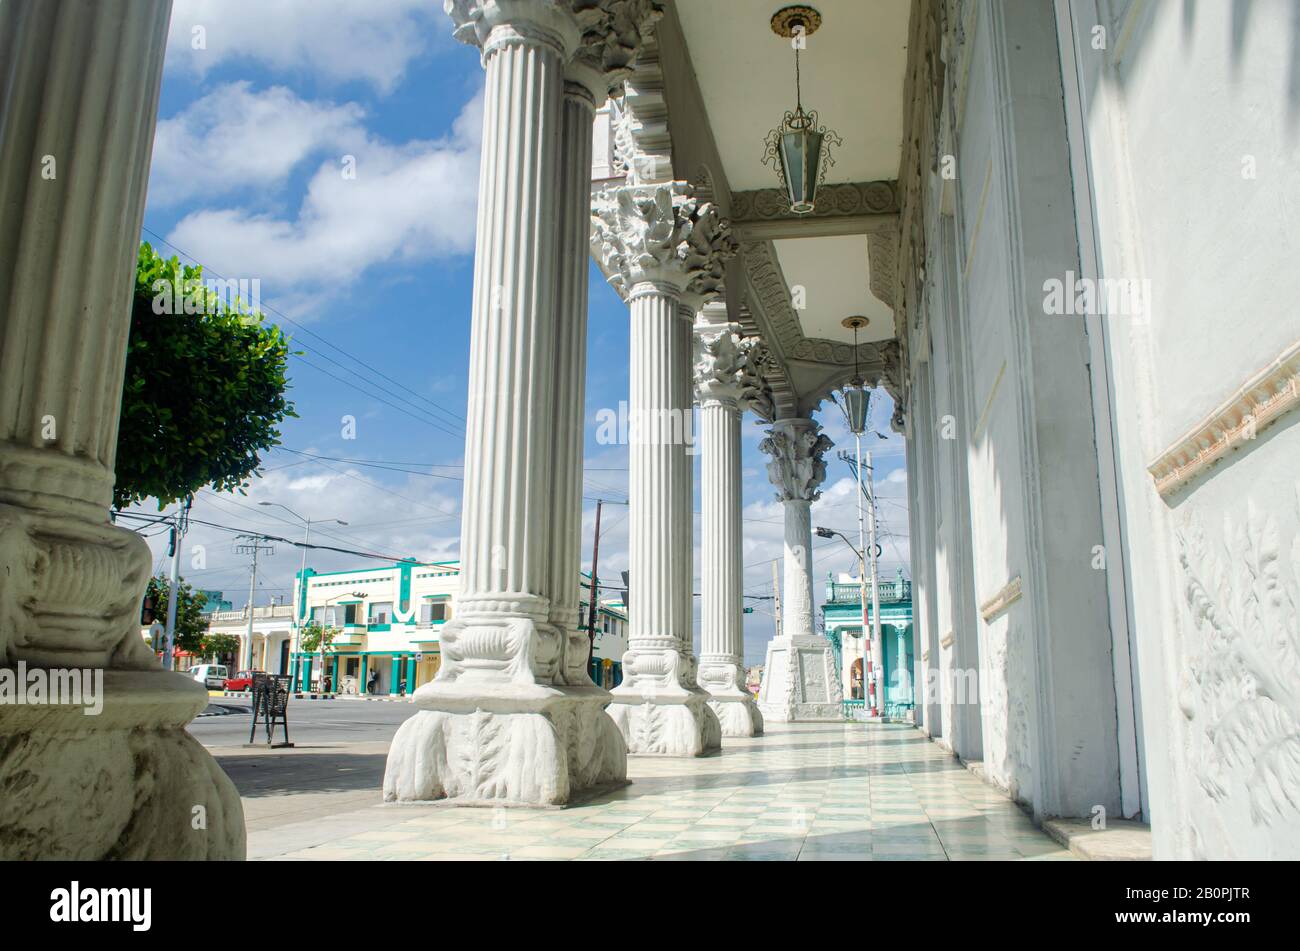 Der Säulensaal des Palacio de Guasch in Pinar del Río. Stockfoto